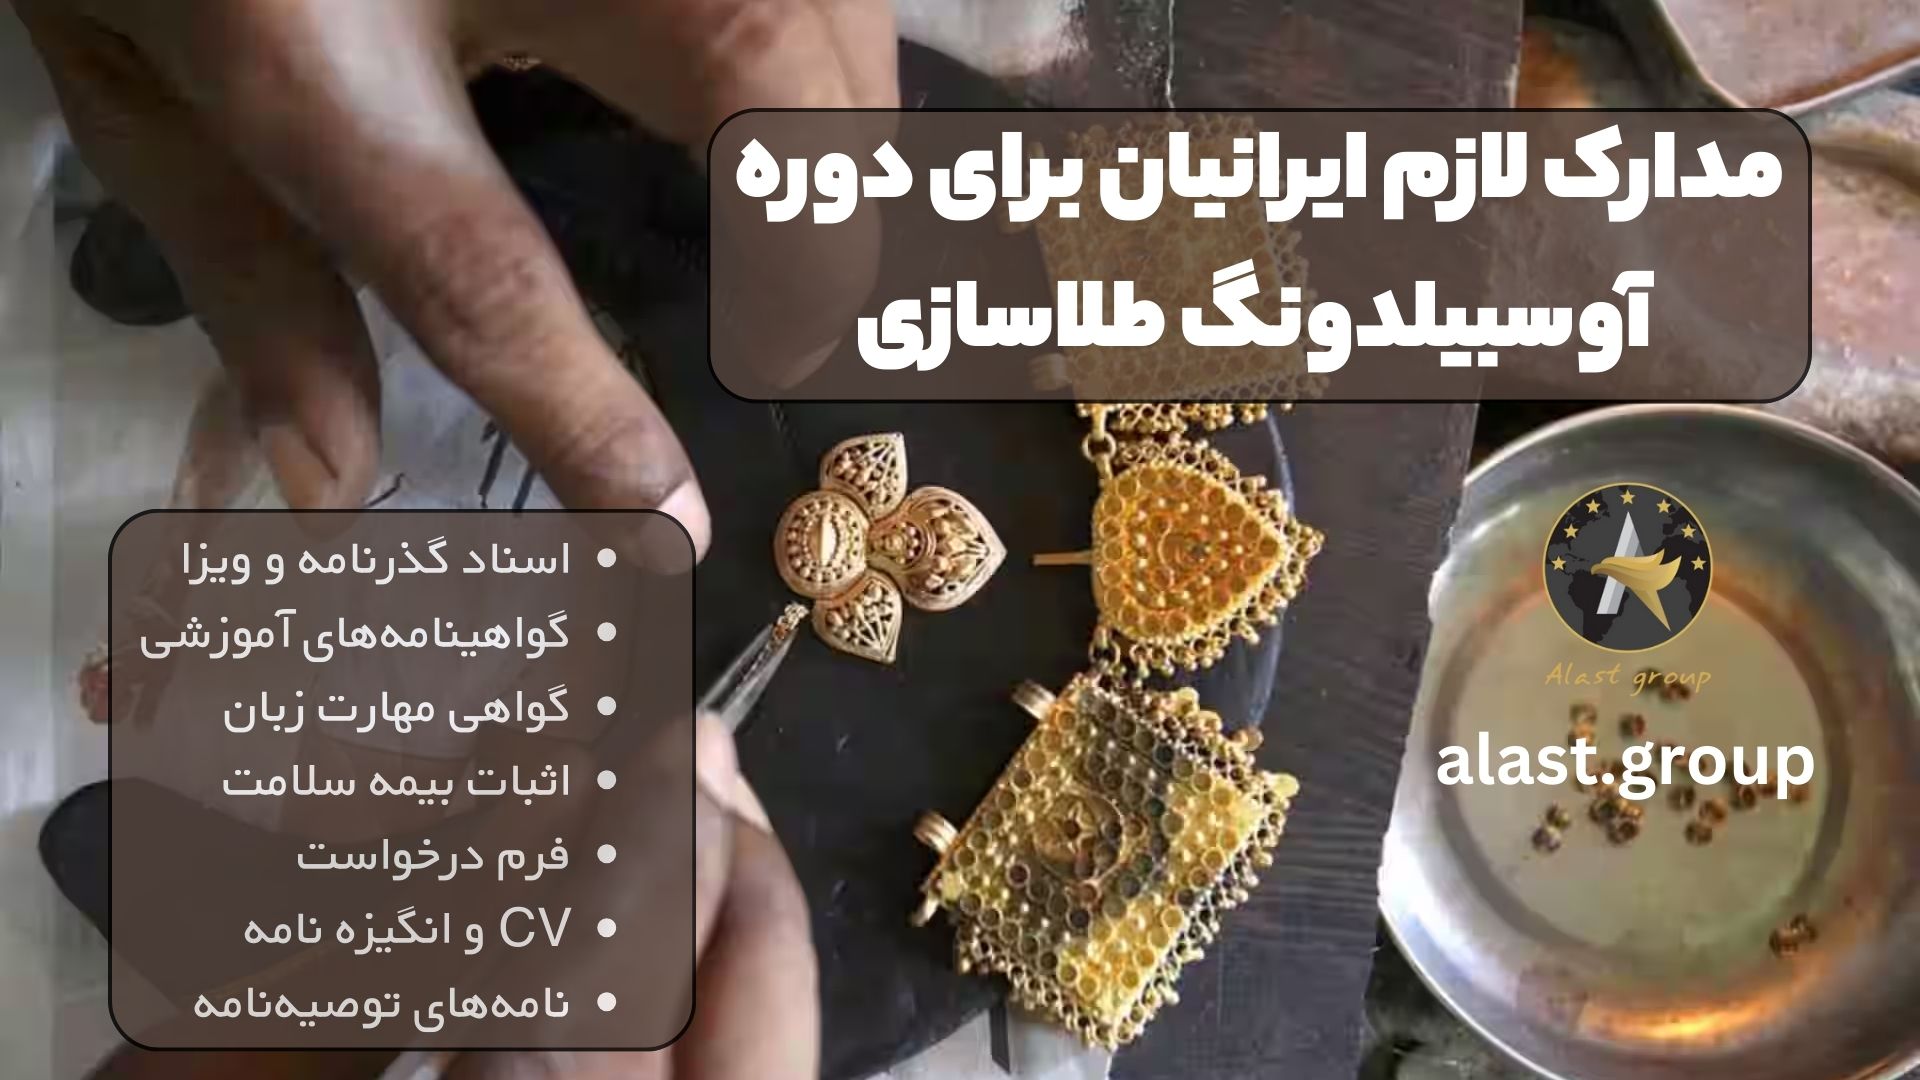 مدارک لازم ایرانیان برای دوره آوسبیلدونگ طلاسازی